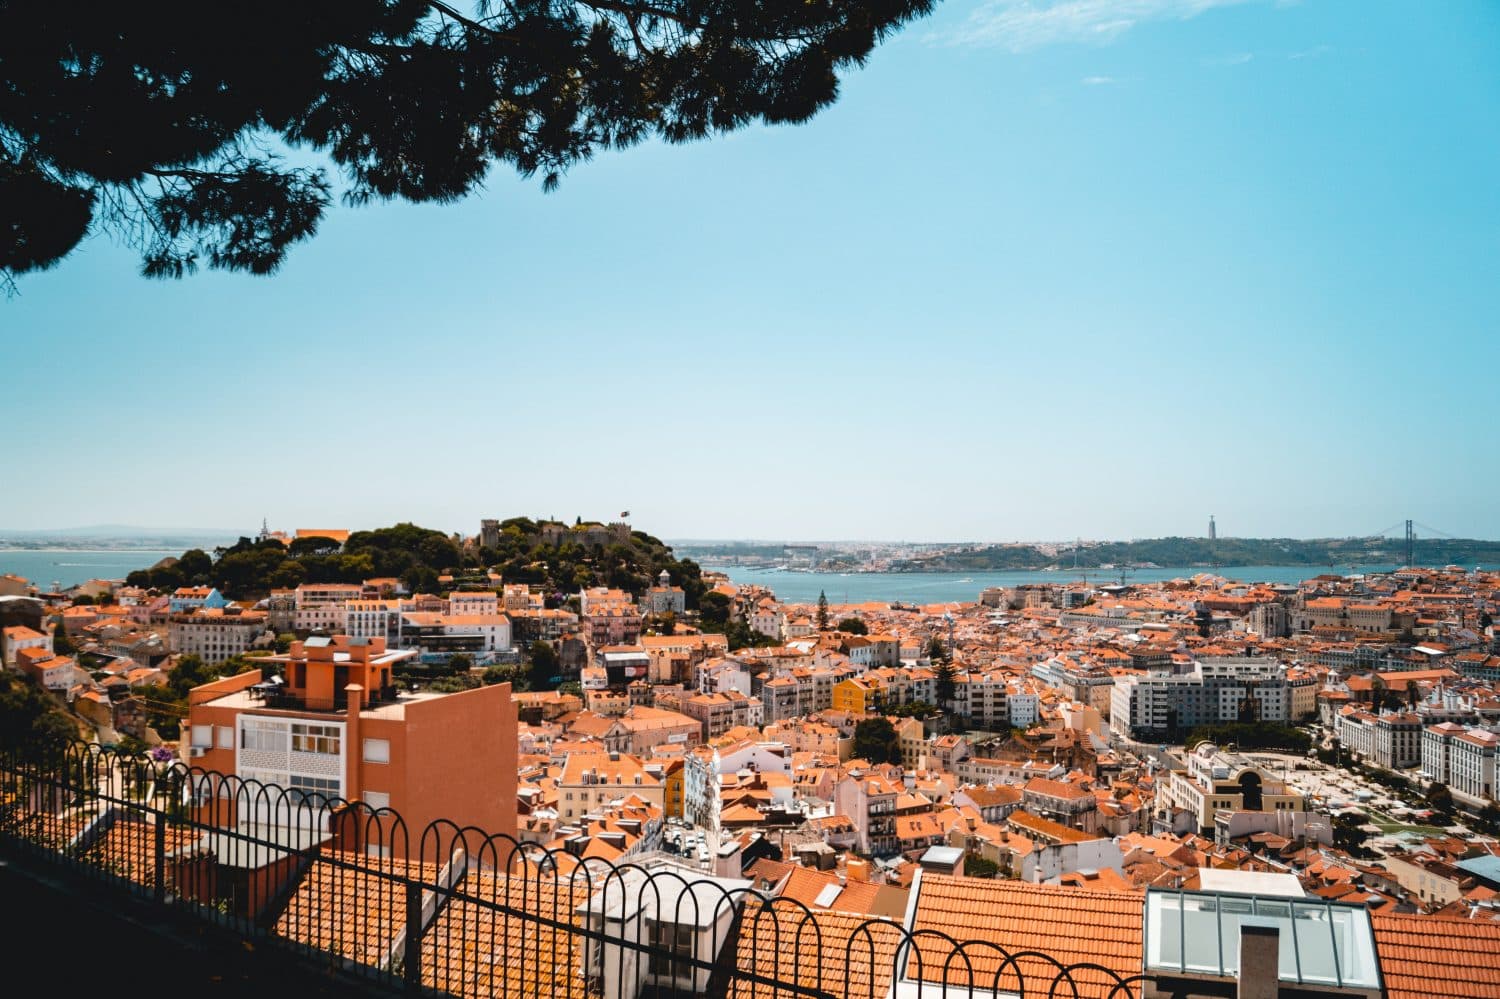 Vista do Rio Tejo de mirante, ilustrando post de hotéis baratos em Lisboa